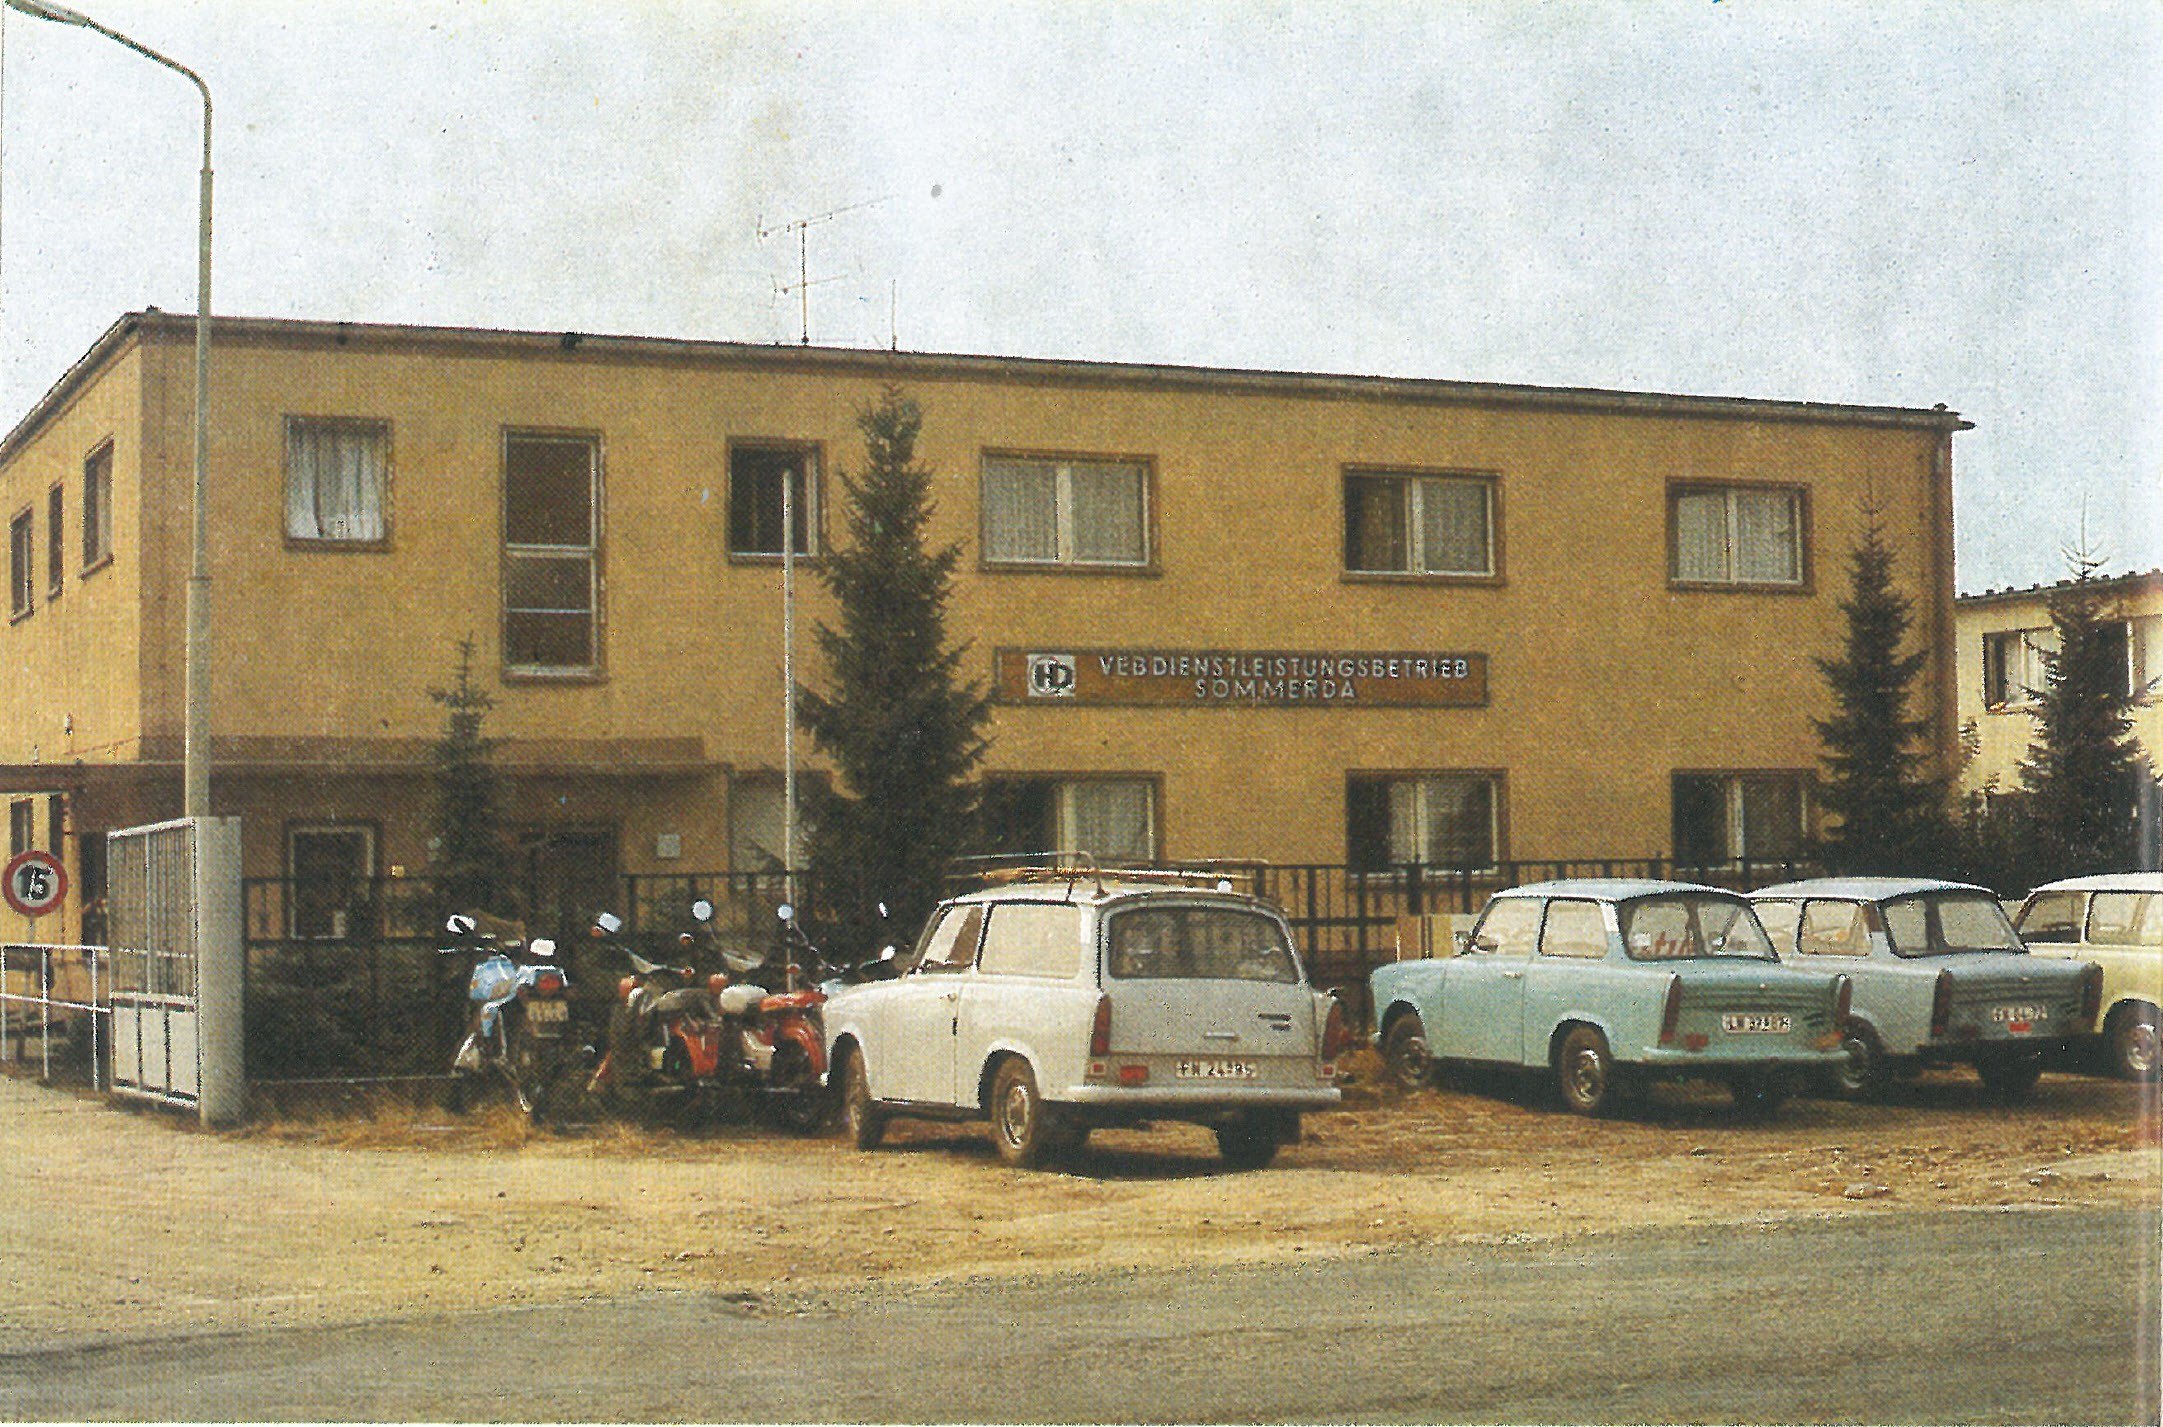 1989 VEB Dienstleistungsbetrieb Sömmerda